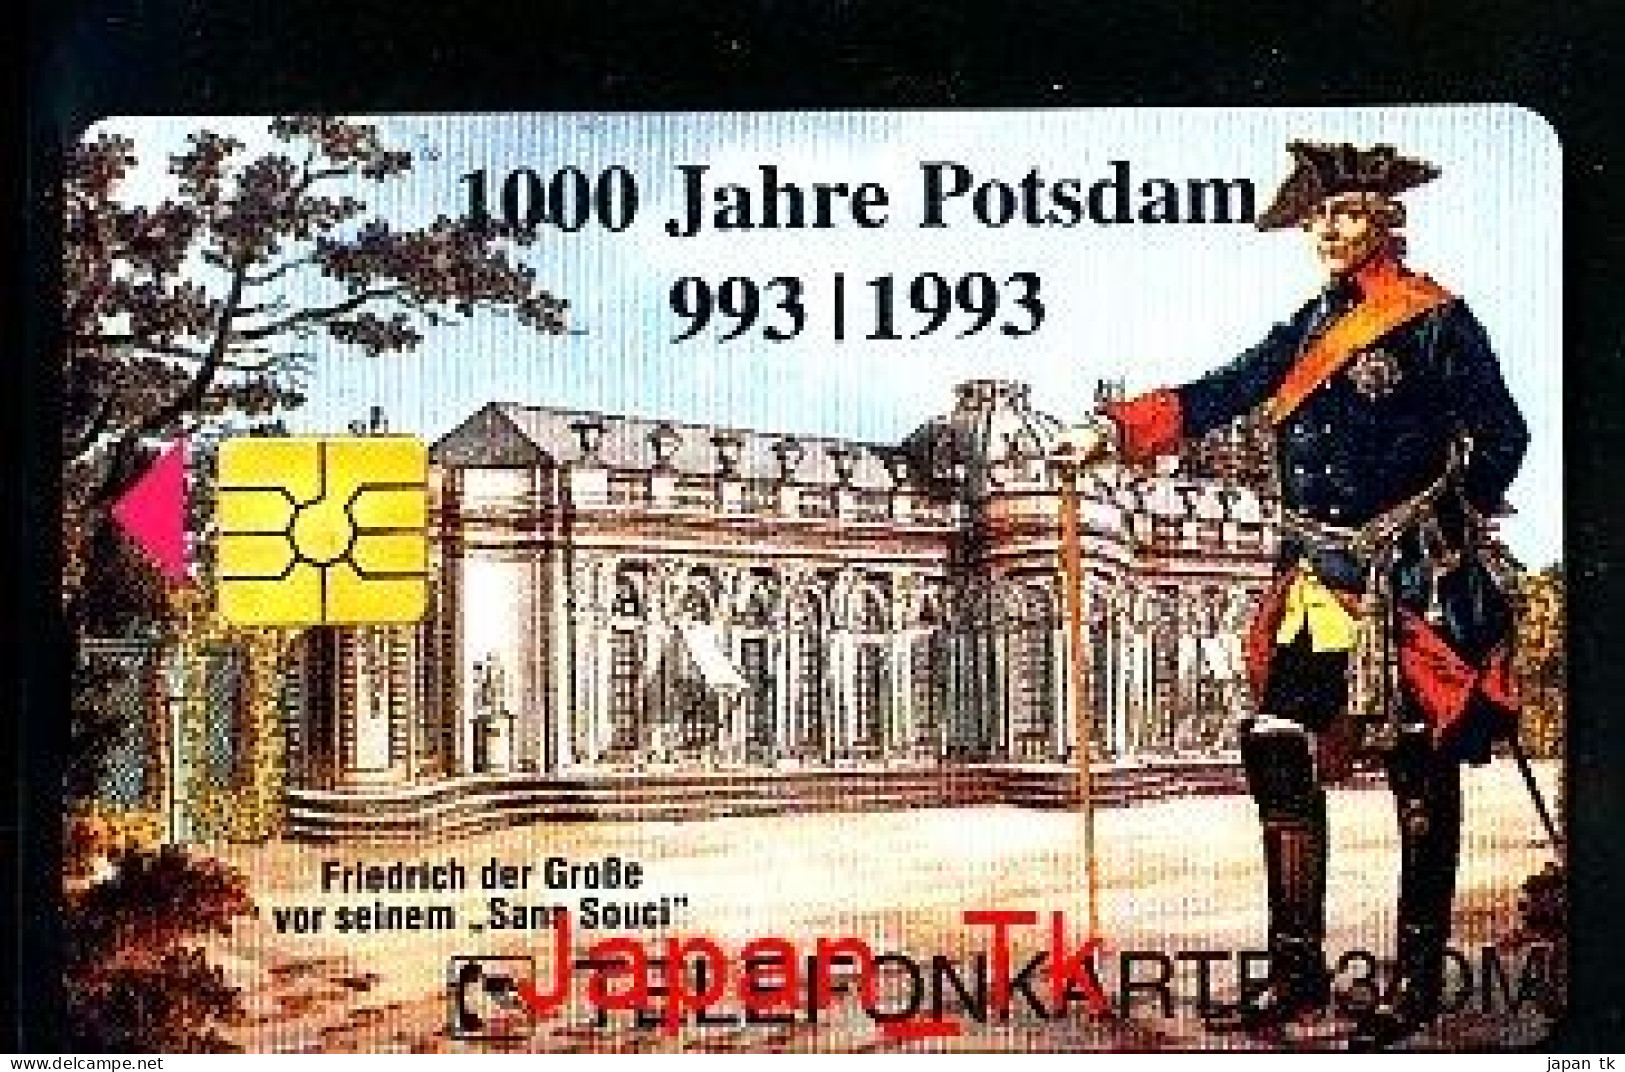 GERMANY O 374 98 1000 Jahre Potsdam   - Aufl  500 - Siehe Scan - O-Series: Kundenserie Vom Sammlerservice Ausgeschlossen